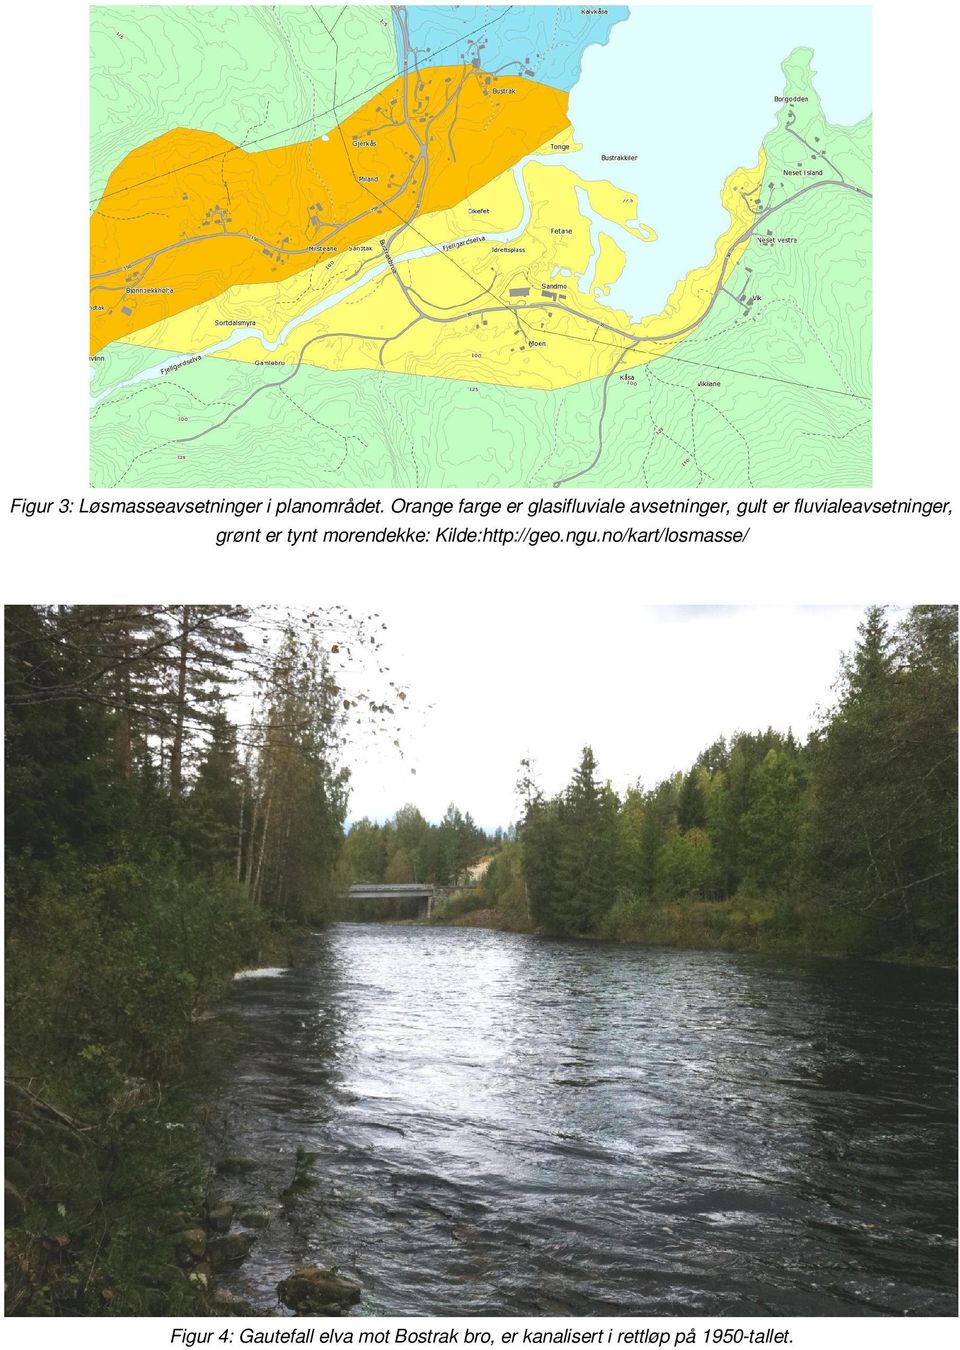 fluvialeavsetninger, grønt er tynt morendekke: Kilde:http://geo.